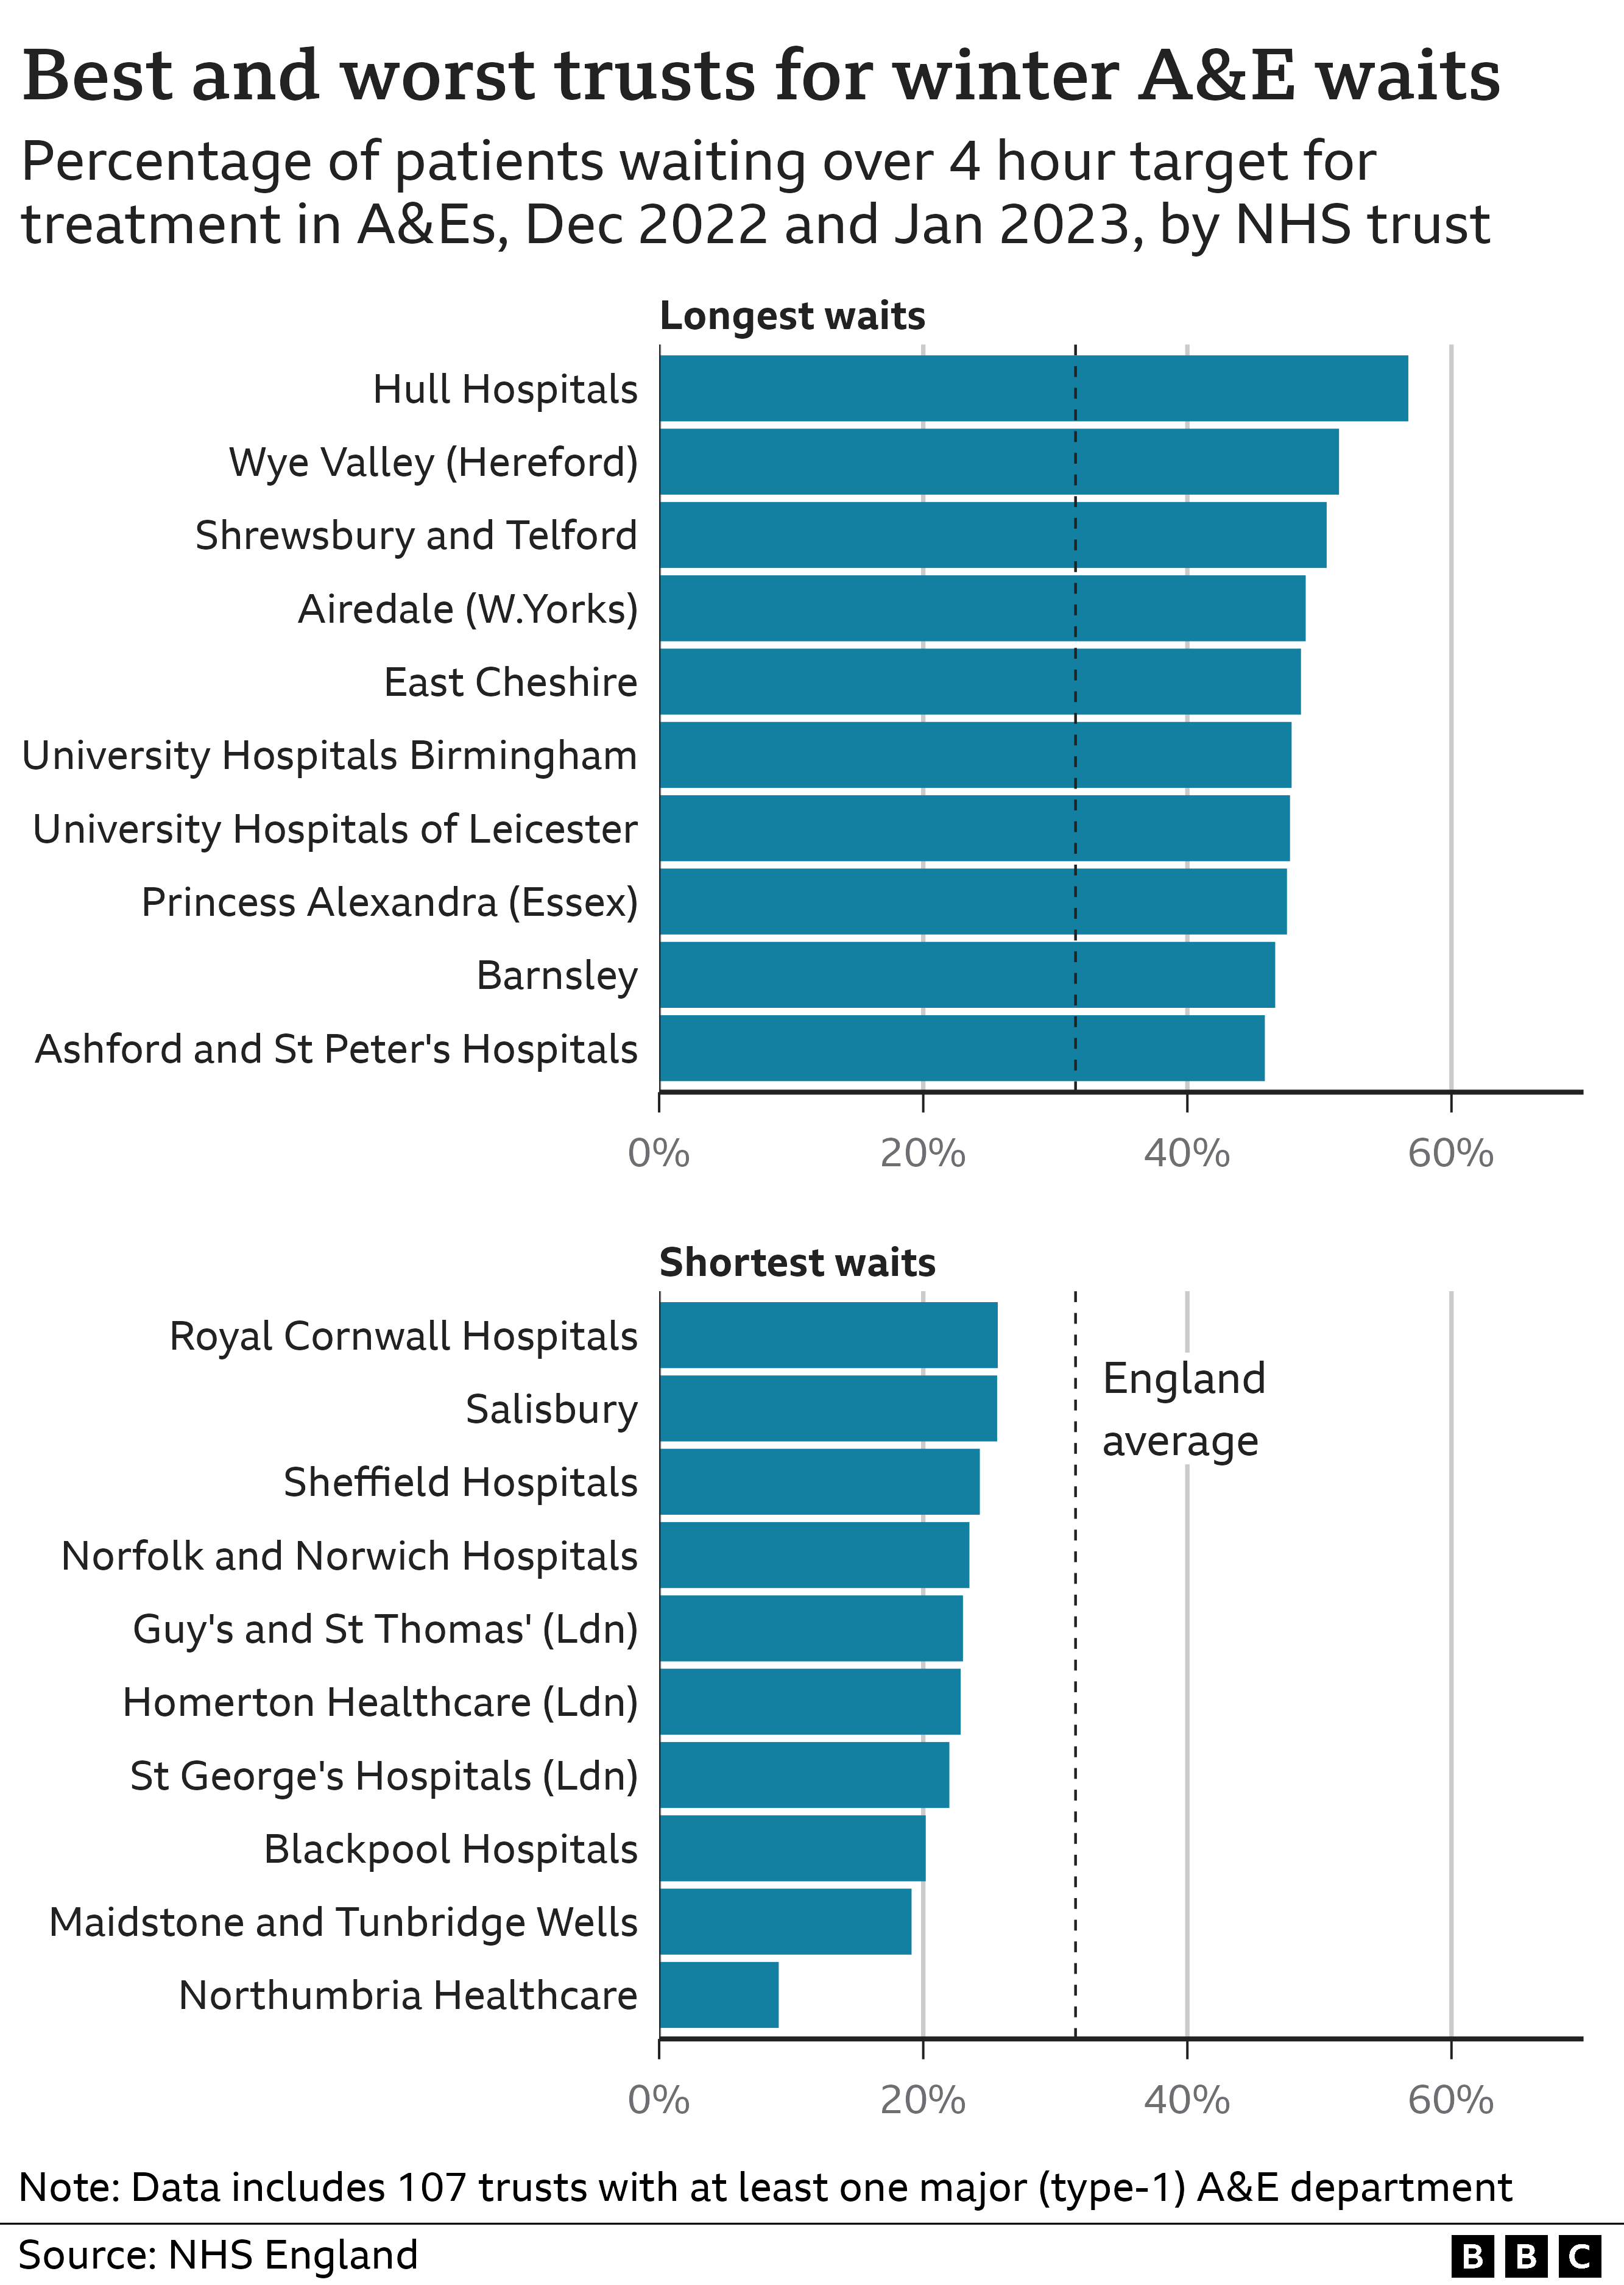 Grafico che mostra le migliori e peggiori attese di quattro ore in base all'istituto di cura